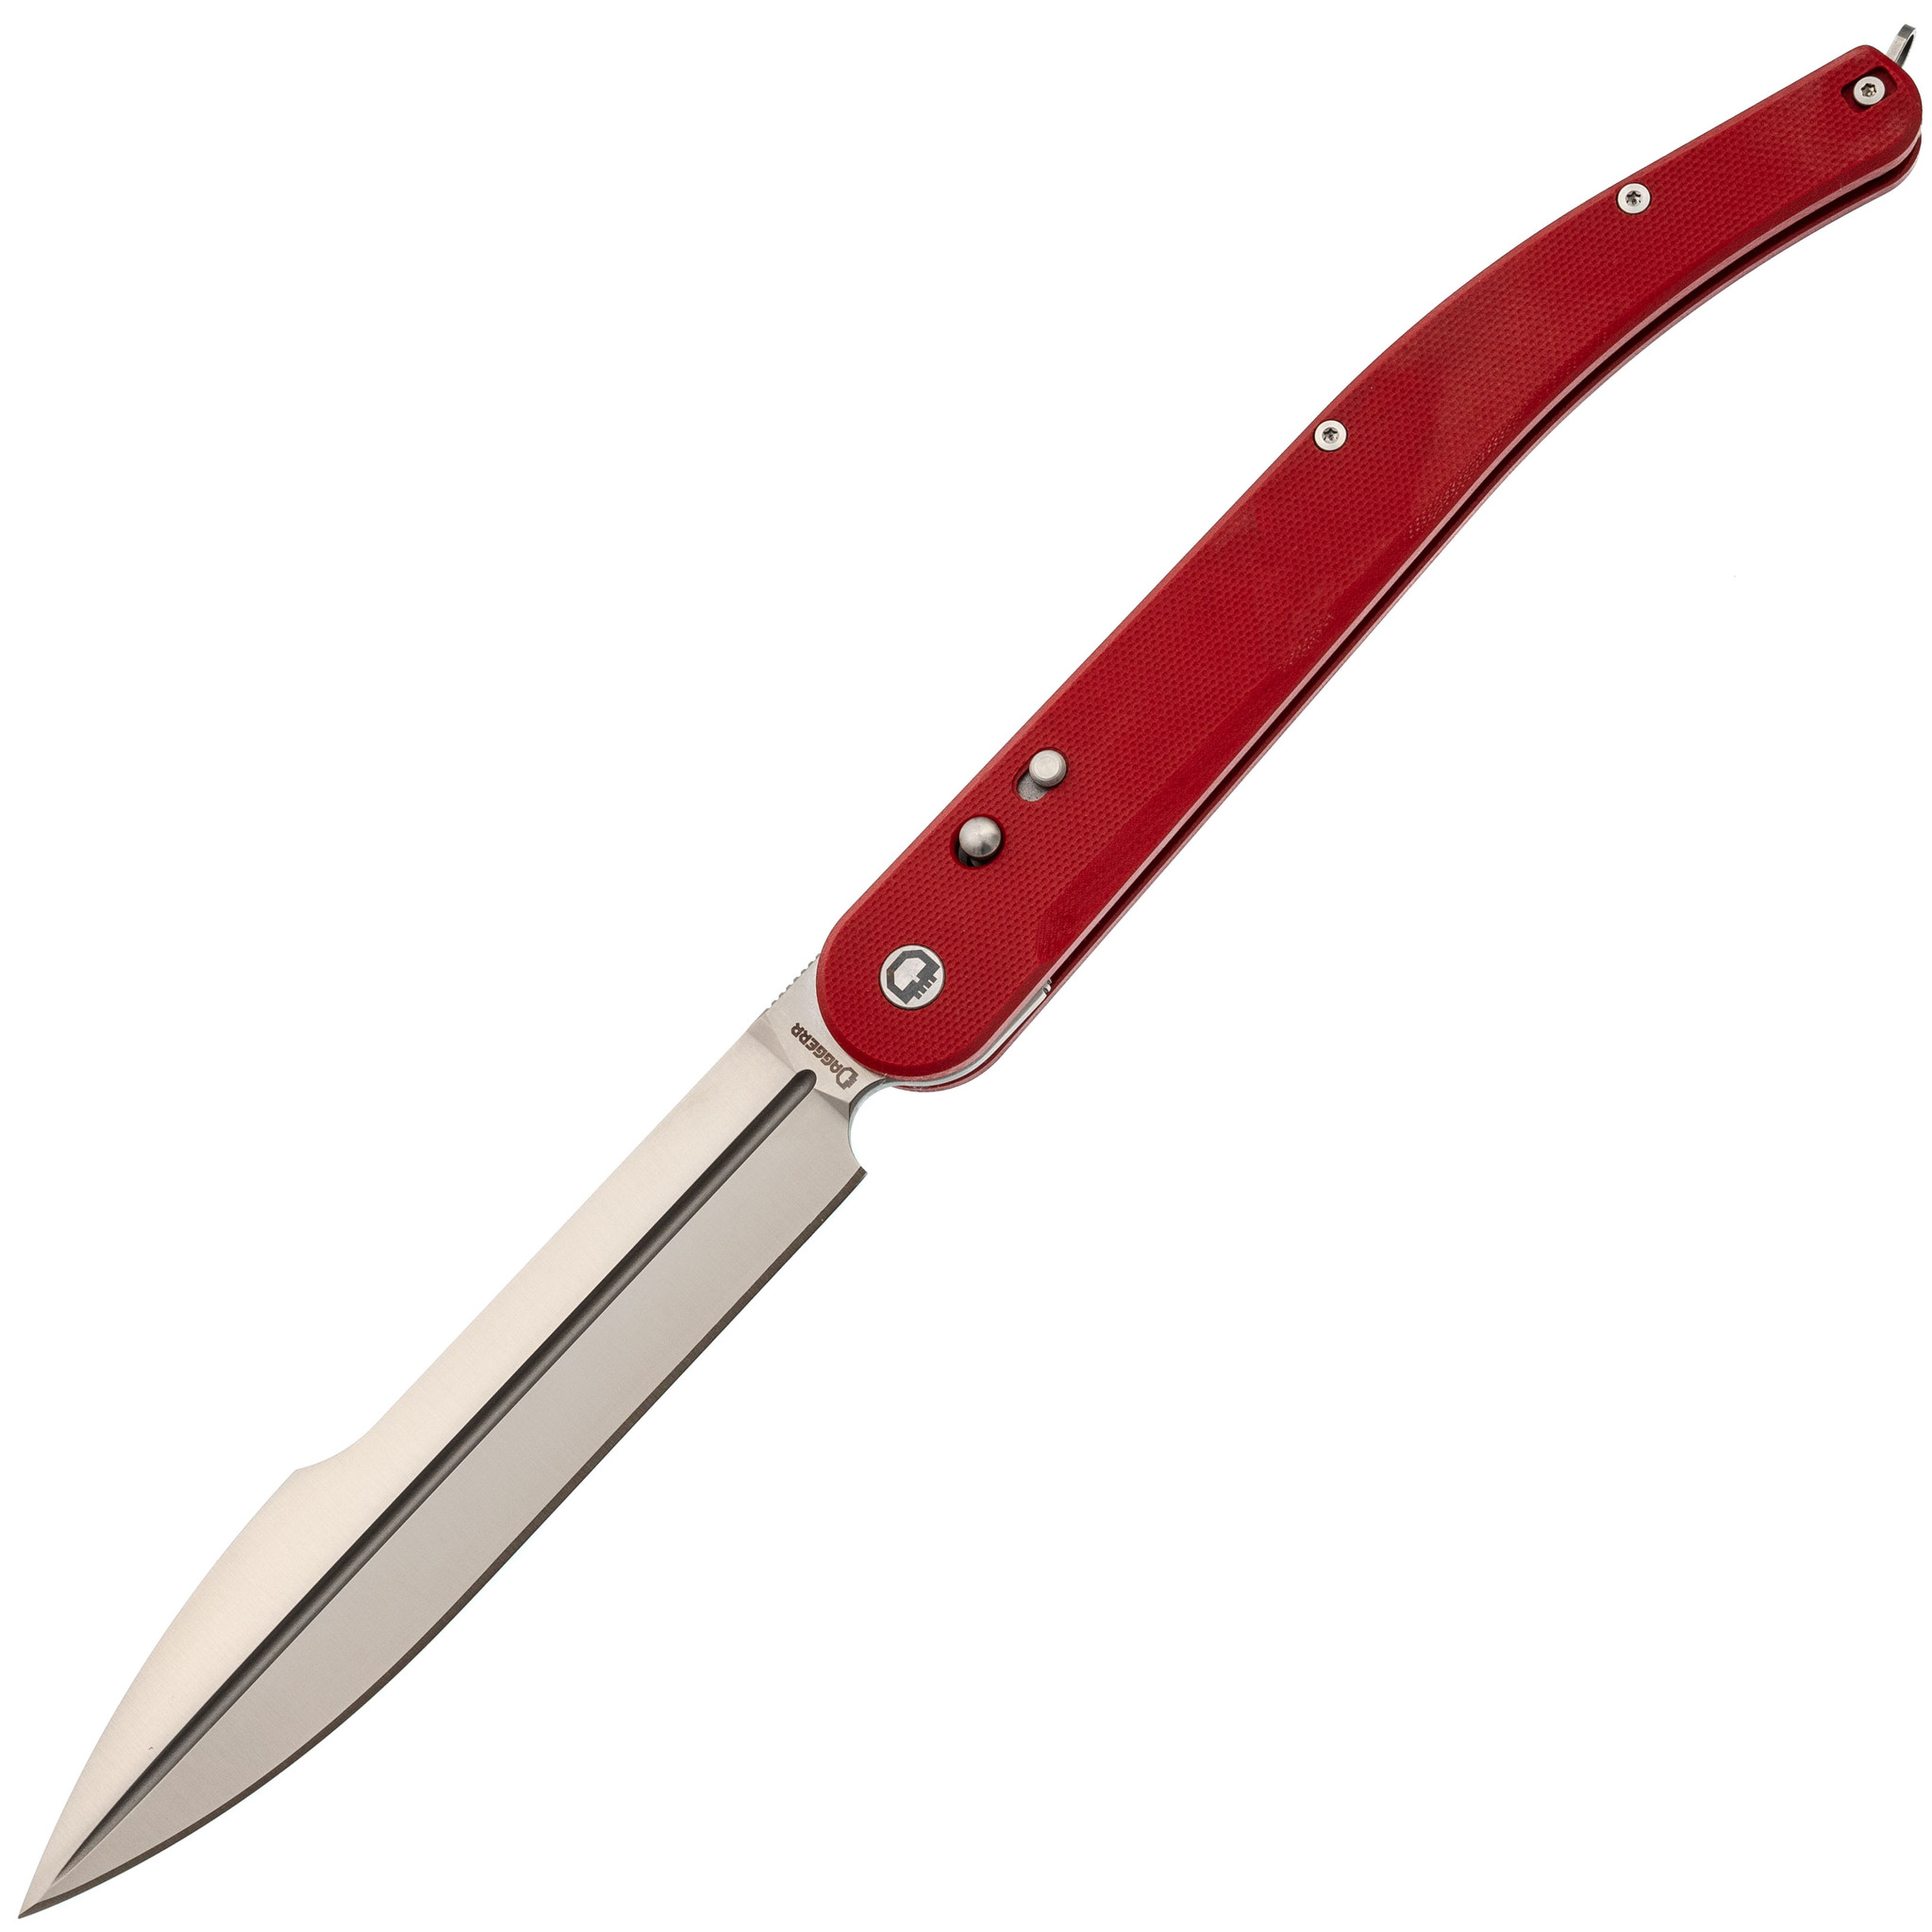 Складной нож Daggerr Navaja De Combate Red, сталь VG-10, рукоять G10 складной нож crkt 1030ts triumph сталь aus 8 tiger stripe рукоять стеклотекстолит g10